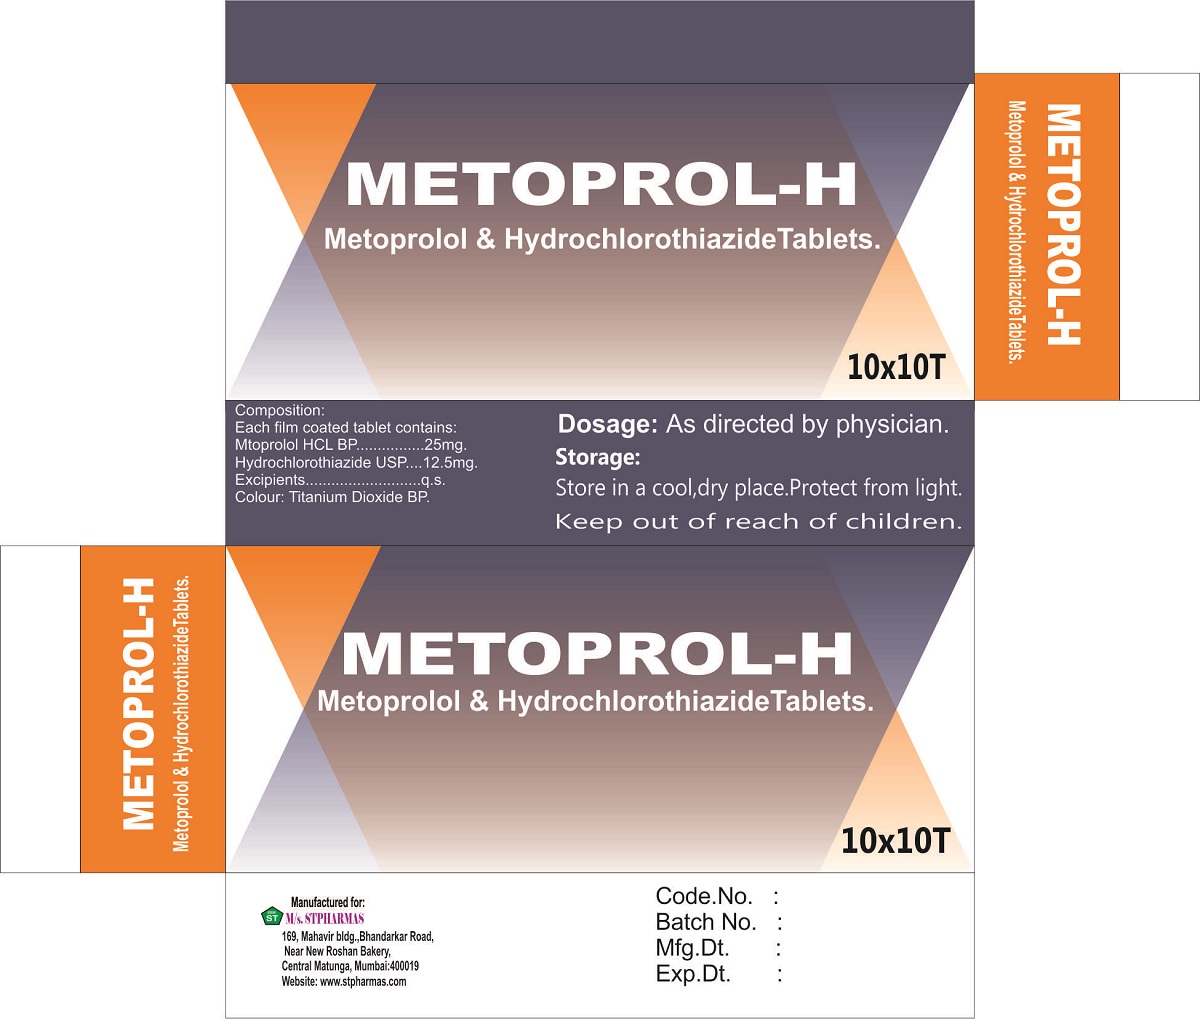 METOPROL-H